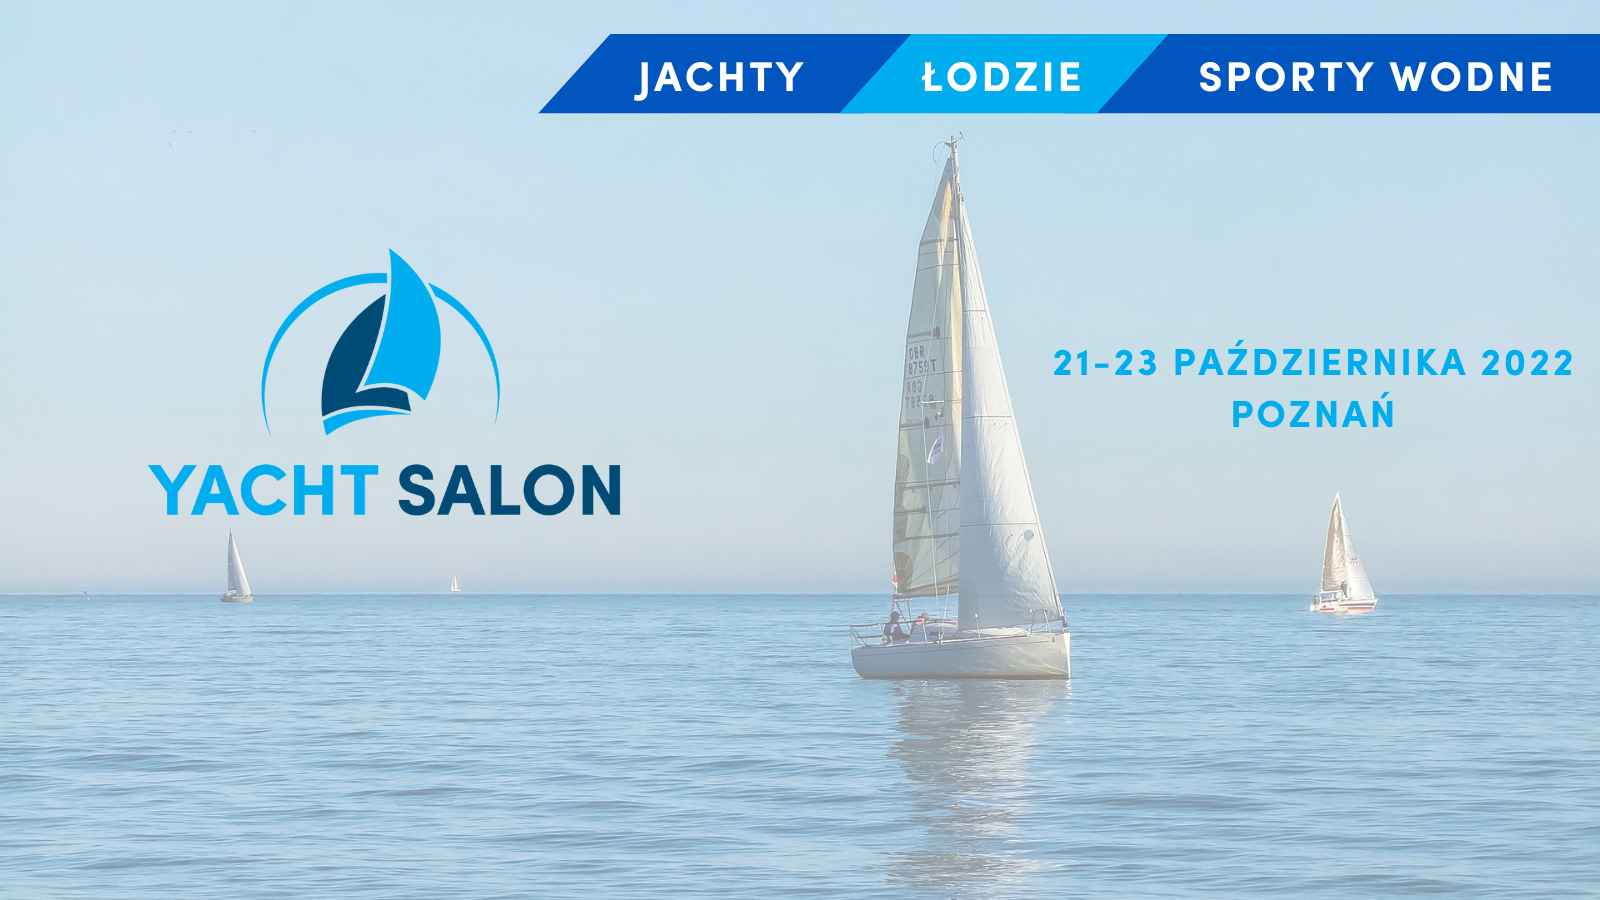 Targi Yacht Salon już tej jesieni w Poznaniu